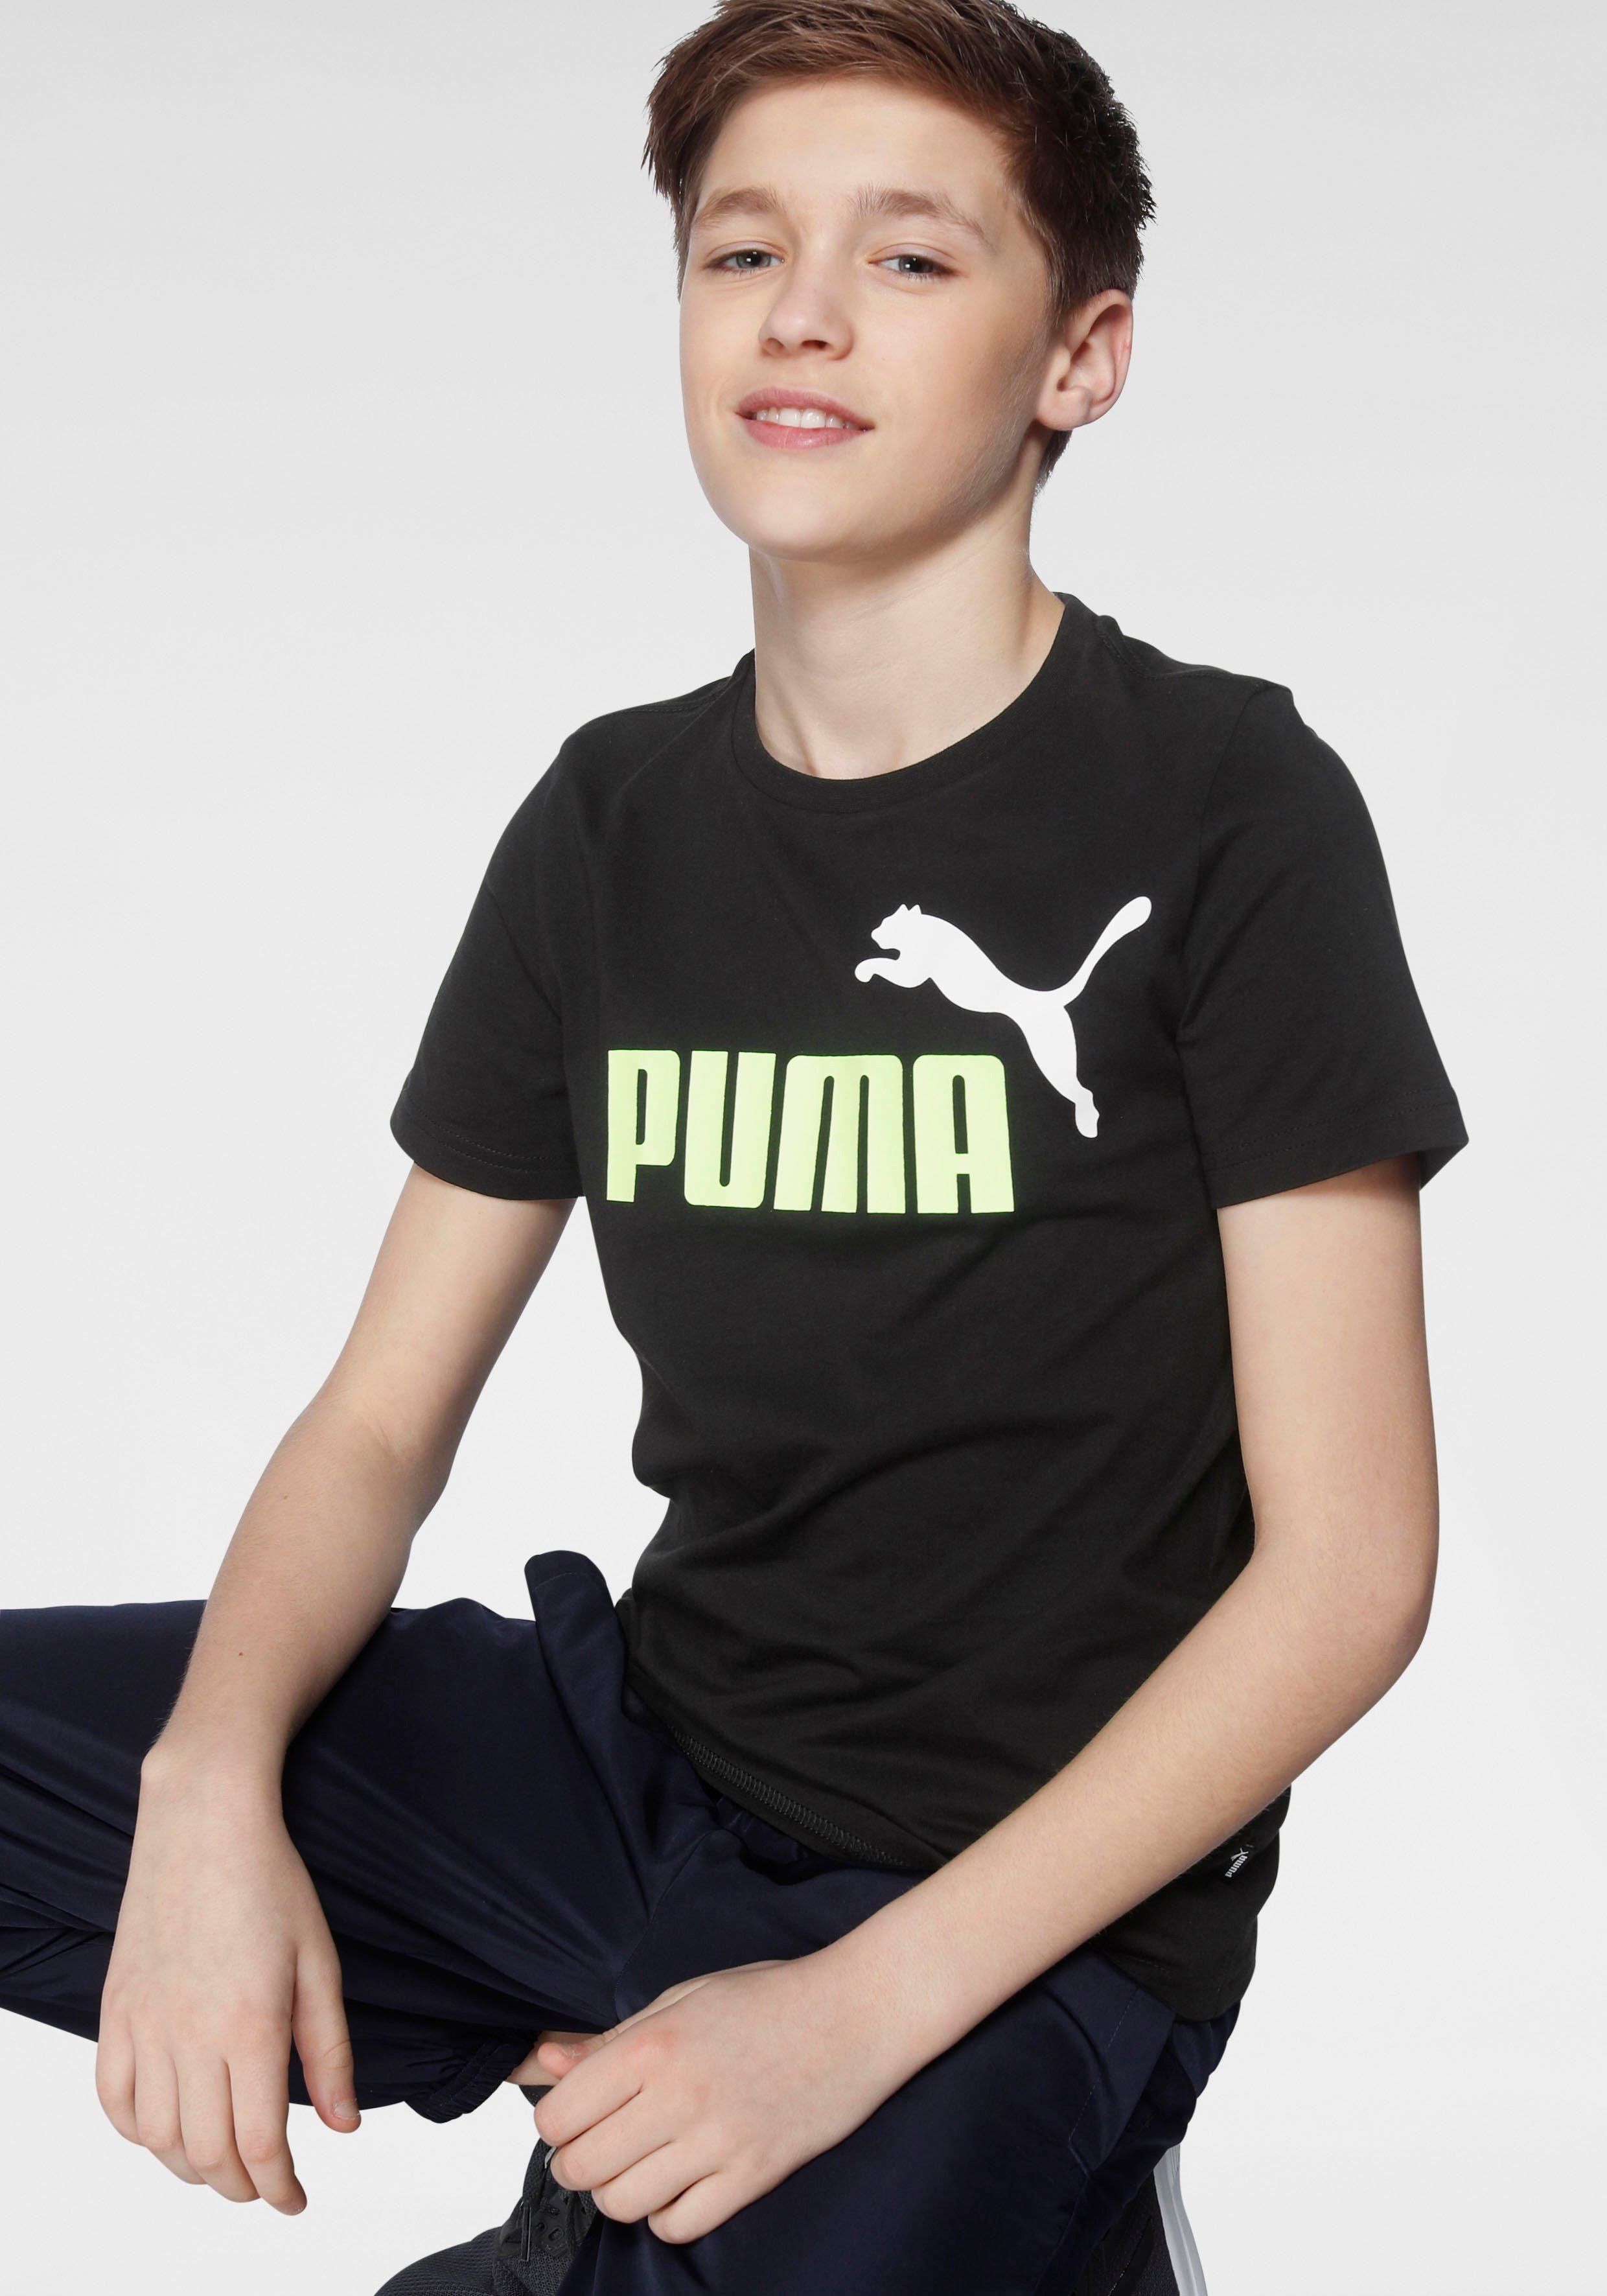 PUMA Jungen Shirts online kaufen | OTTO